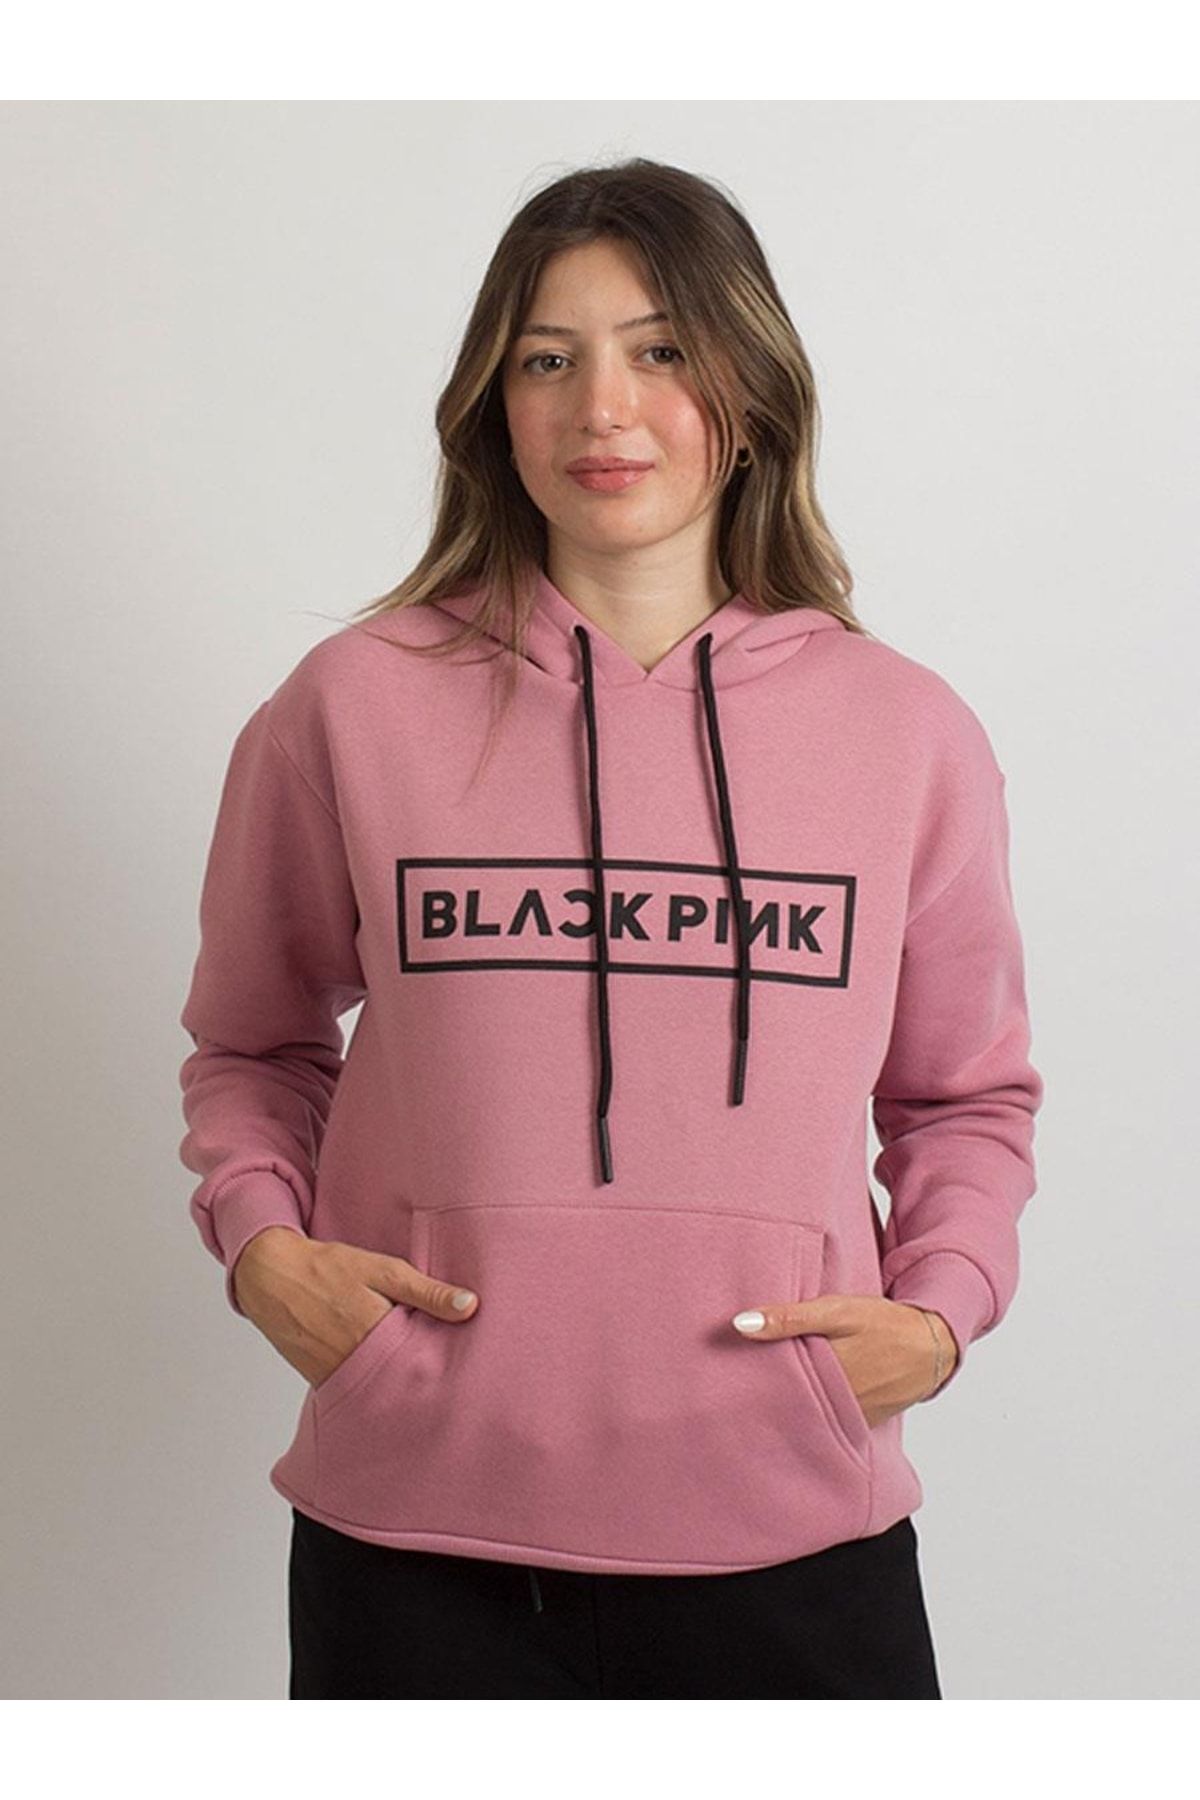 TSHIRT35 Black Pink Müzik Sweatshirt Hoodie 8629